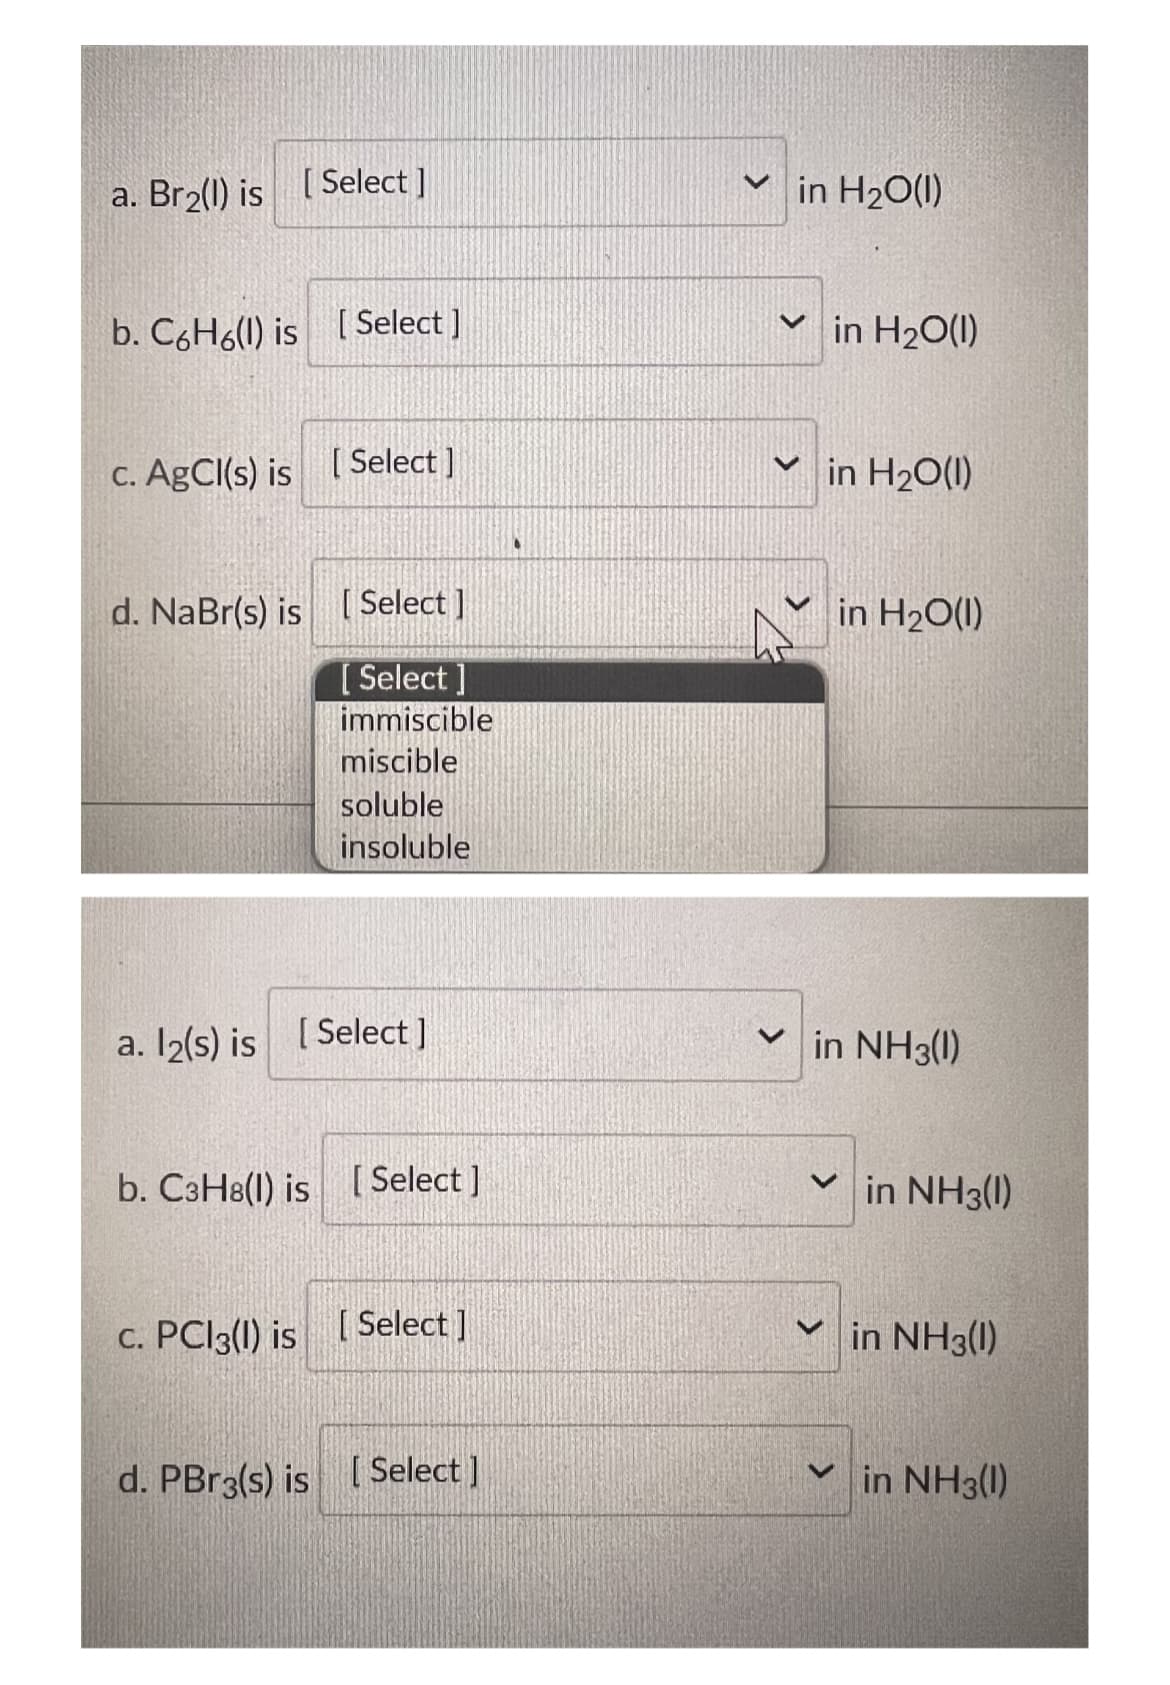 a. Br₂(l) is [Select]
b. C6H6(l) is [Select]
c. AgCl(s) is [Select]
d. NaBr(s) is [Select]
[Select]
immiscible
miscible
soluble
insoluble
a. l2(s) is [Select]
b. C3H8(l) is [Select]
c. PC13() is [Select]
d. PBr3(s) is [Select]
✓in H₂O(1)
✓in H₂O(1)
✓in H₂O(1)
V
in H₂O(l)
in NH3(1)
in NH3(1)
in NH3(1)
✓in NH3(1)